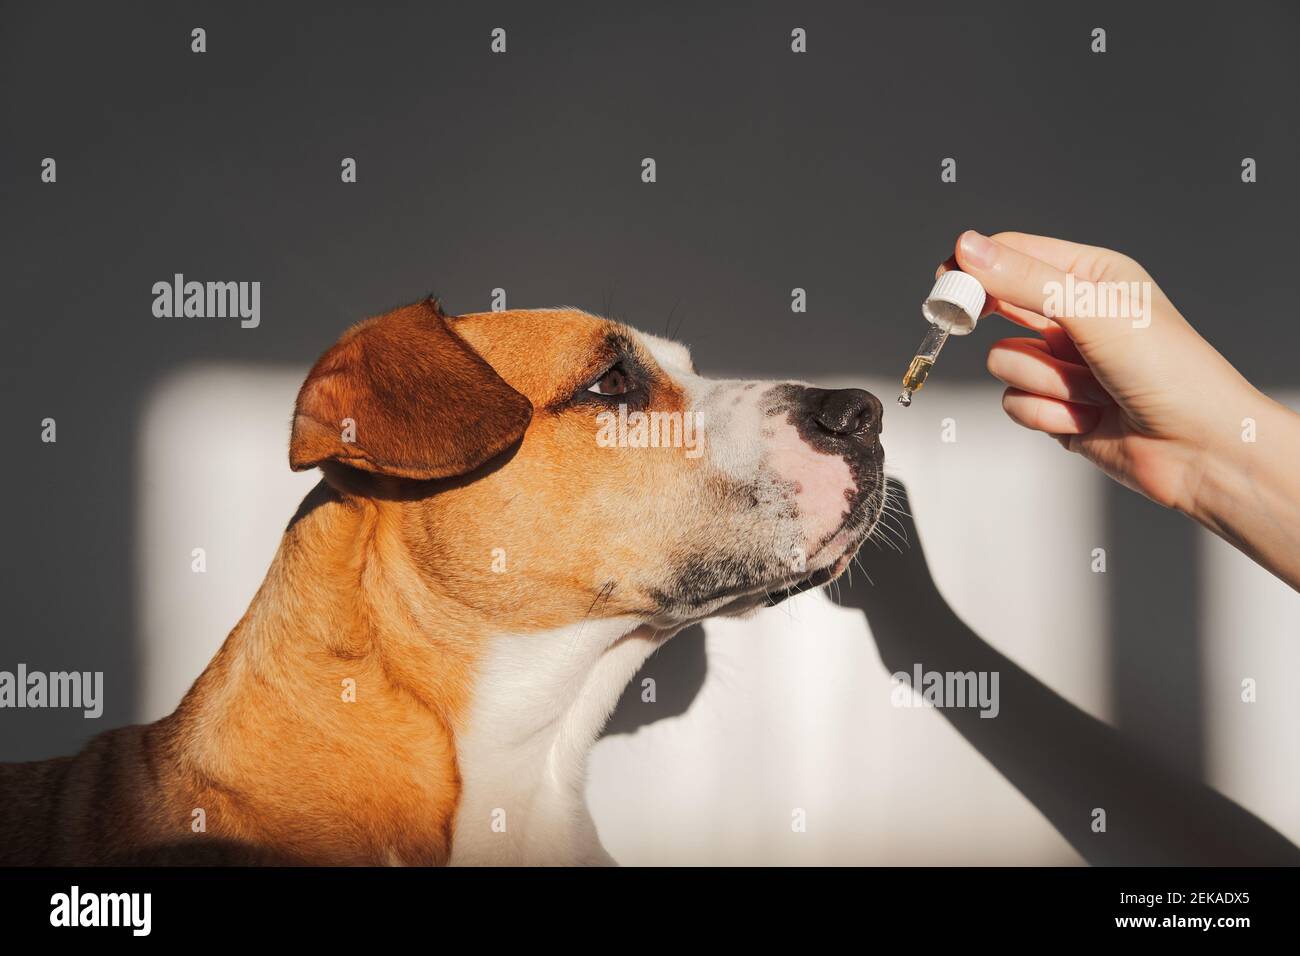 Hund, der ätherisches Öl aus dem Tropf nimmt. Nahrungsergänzungsmittel, beruhigende Produkte, cbd- oder thd-Öle für Haustiere Stockfoto